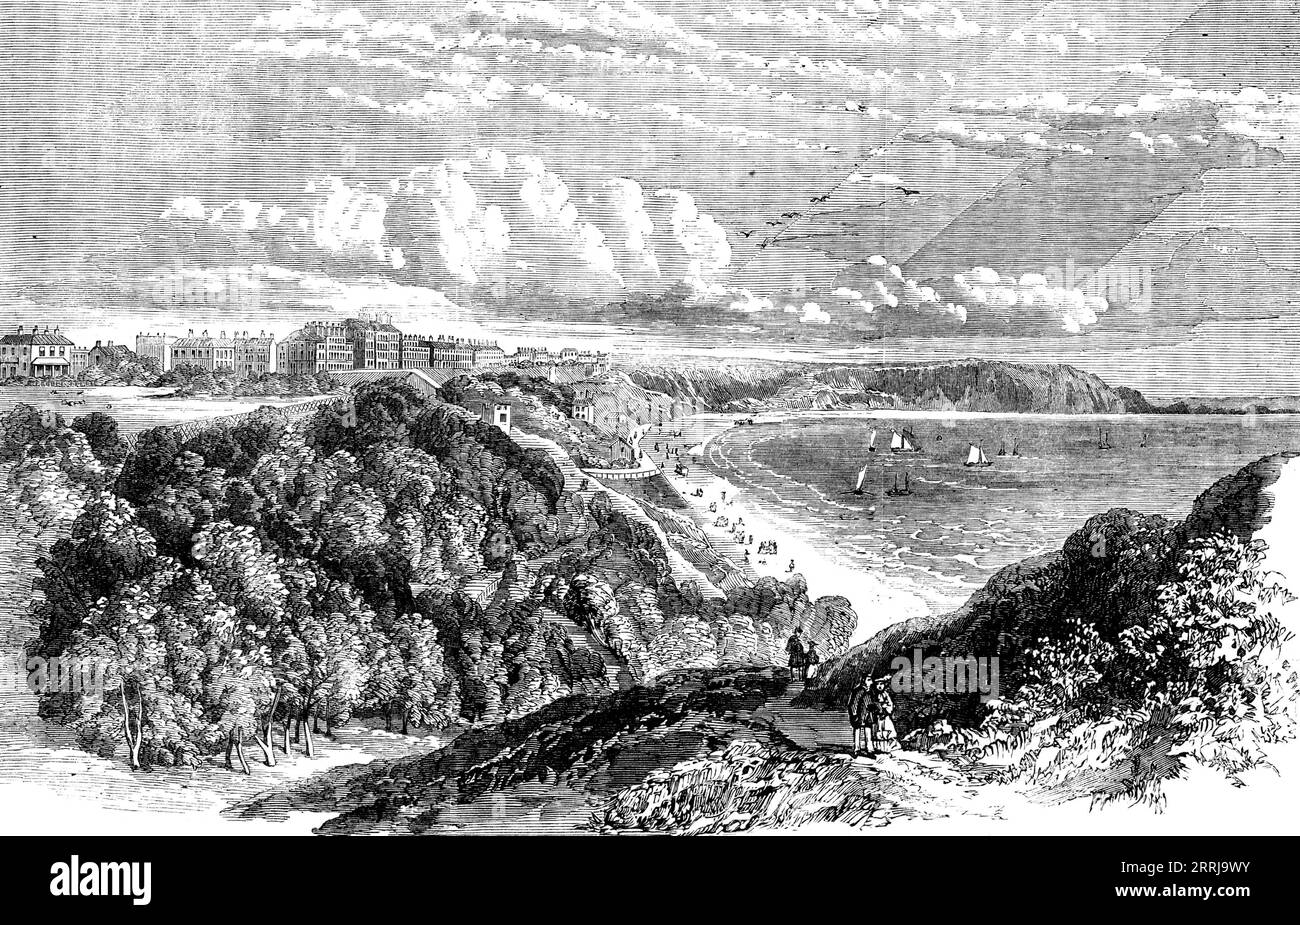 Filey, Yorkshire - aus dem South Cliff, 1858. "Diese Stadt liegt am Kopf einer Bucht, auf Klippen, die mehr als hundert Fuß über dem Meeresspiegel liegen; ihr Lehmlager bildet einen merkwürdigen Kontrast zu der weißen Kreidezunge, die sie auf der südöstlichen Seite umschließt. und sein noch außergewöhnlicheres Felsenriff, Filey Brigg genannt, das, weit in die salzige Tiefe hinausgestreckt, einen natürlichen Wellenbrecher auf seinem nordöstlichen Aspekt bildet... die Schichtung dieser Felsen, die aus Kalkkörnern bestehen, ist außerordentlich regelmäßig. Die gigantische Rolle des Deutschen Ozeans, selbst in seinem Stockfoto